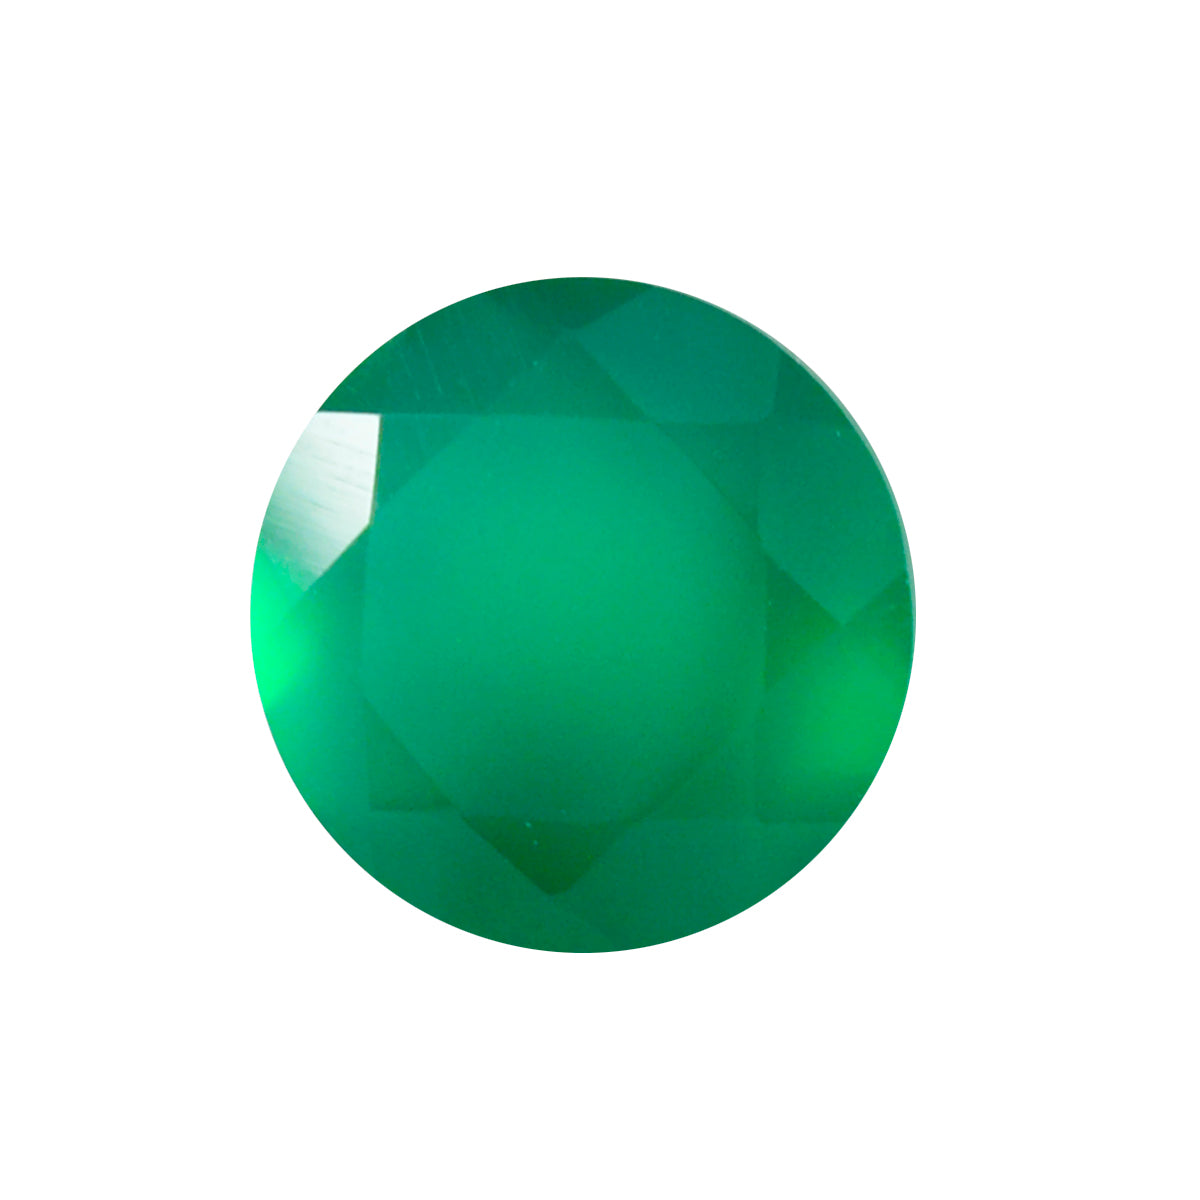 Riyogems, 1 pieza, ónix verde auténtico facetado, 9x9mm, forma redonda, gema suelta de calidad atractiva